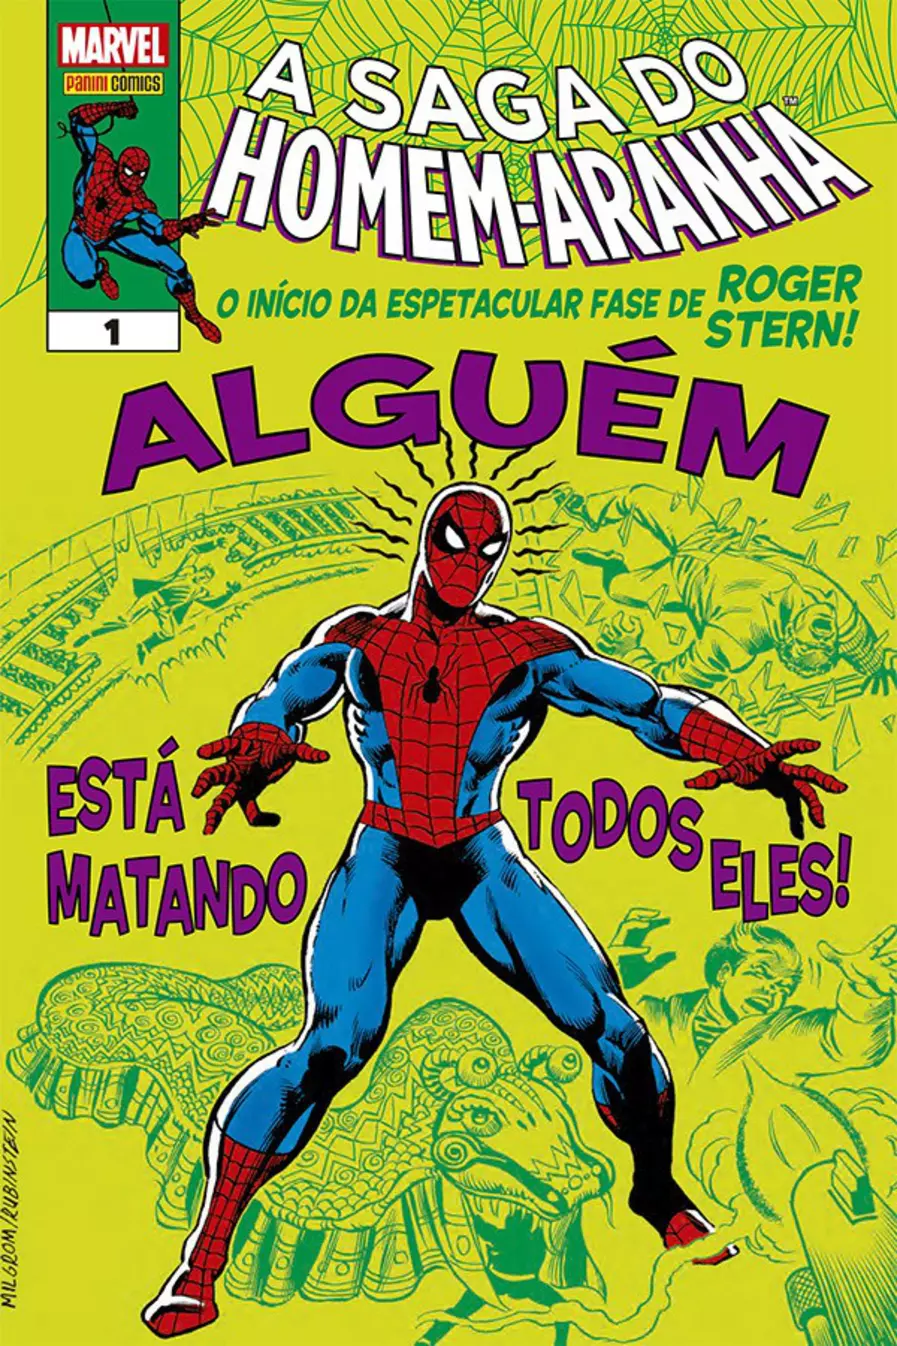 Homem-Aranha: Através do Aranhaverso'' promete overdose de super-heróis -  Cultura - Estado de Minas